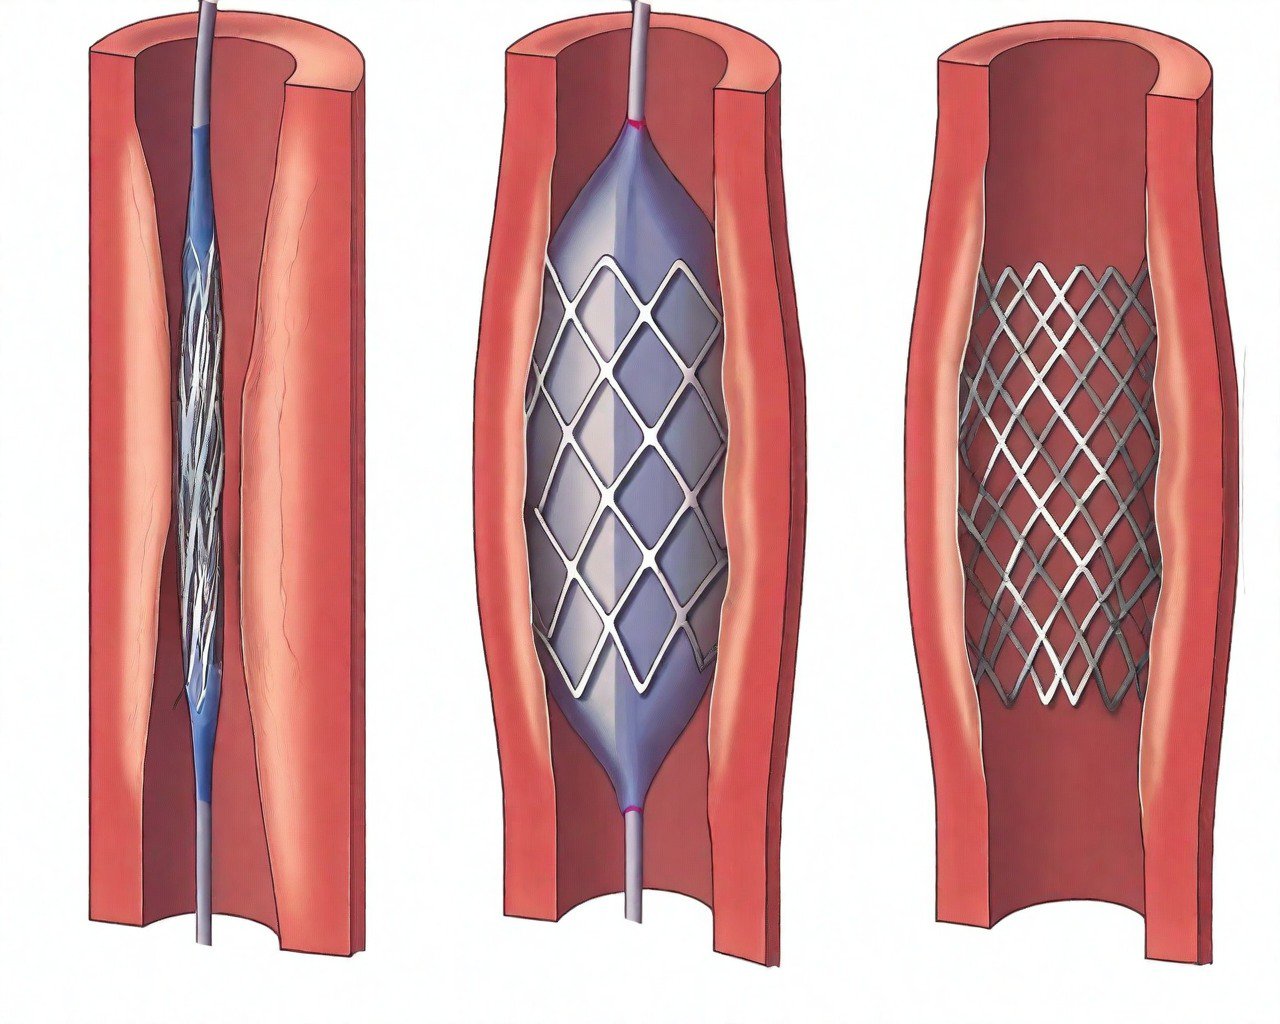 Cấu trúc giải phẫu động mạch vành bị thay đổi do đặt stent